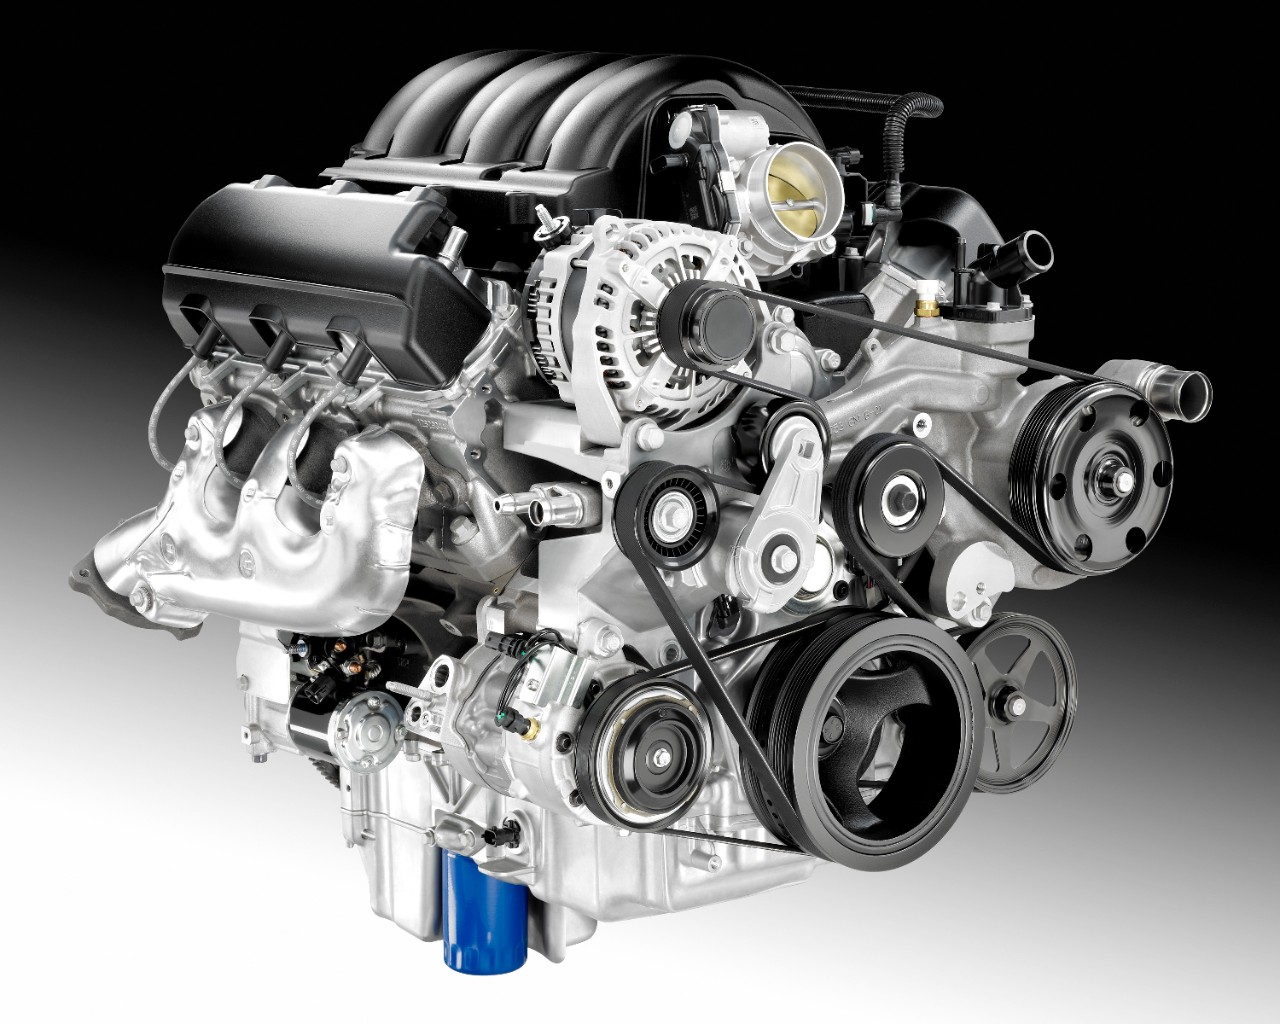 GM 4.3 Liter V6 EcoTec3 LV3 Engine Info, Power, Specs ... 95 silverado engine compartment wiring diagram 